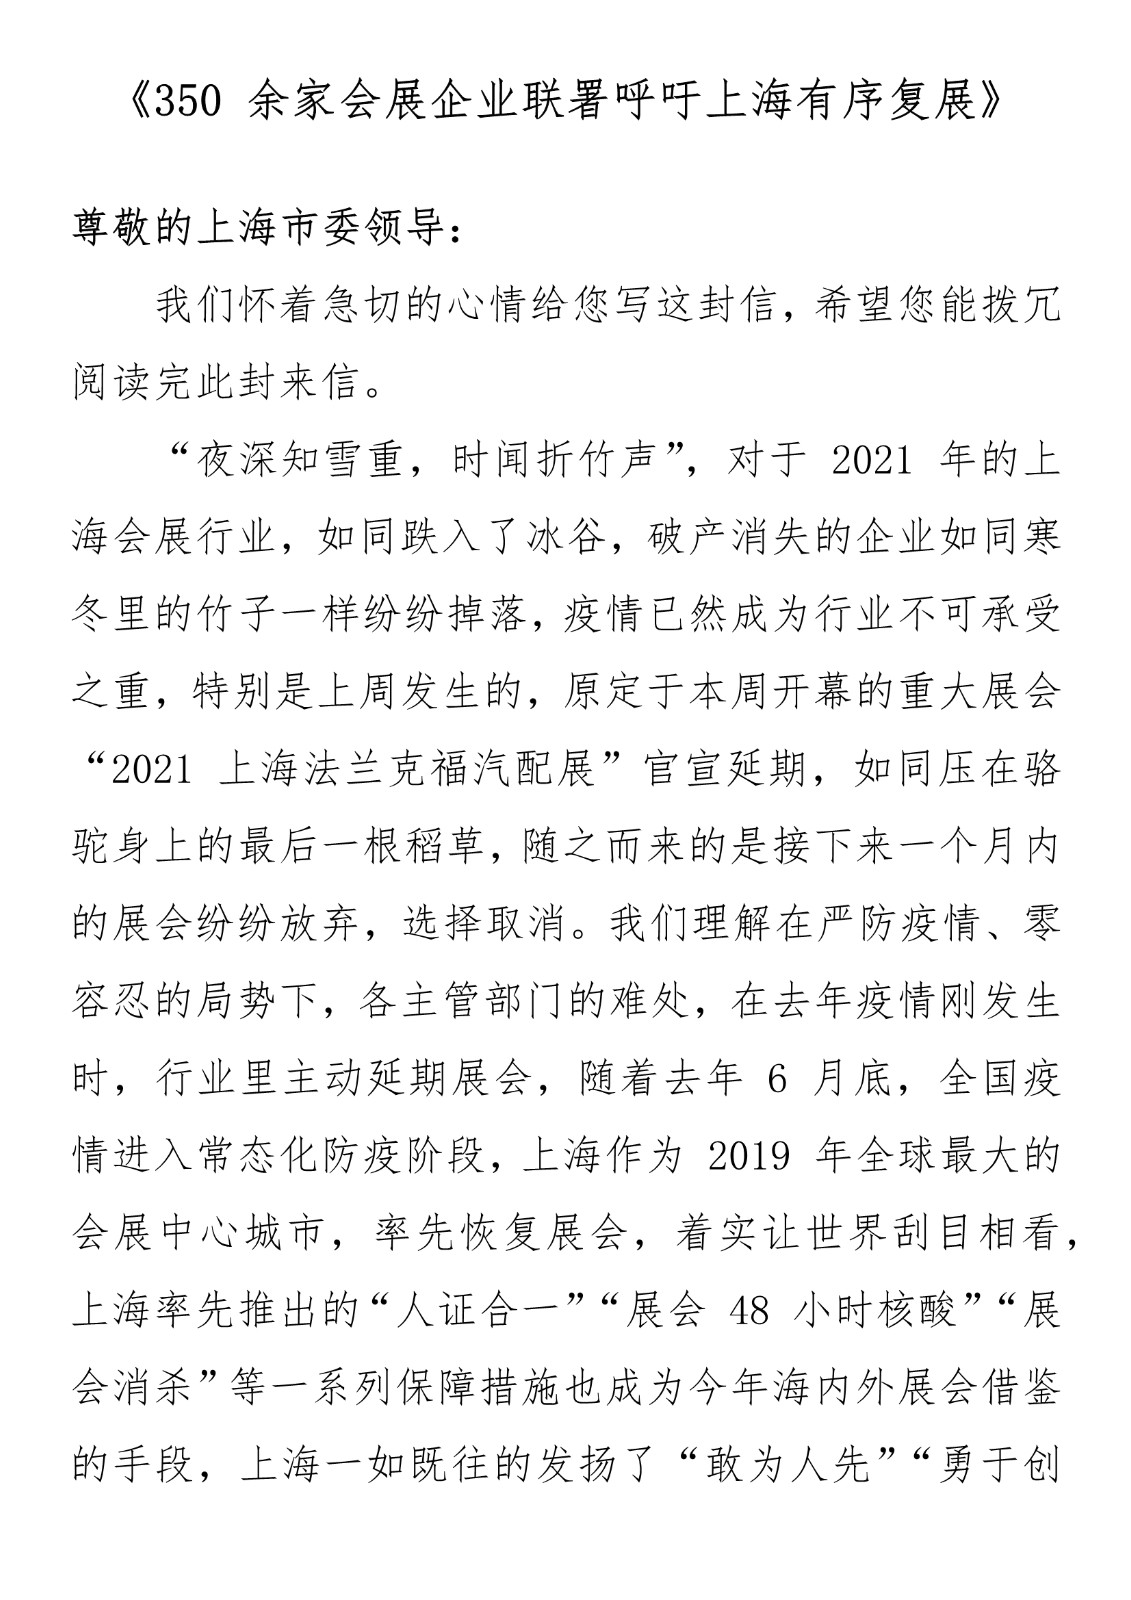 同休戚，共进退 | 《350余家会展企业联署呼吁上海有序复展》